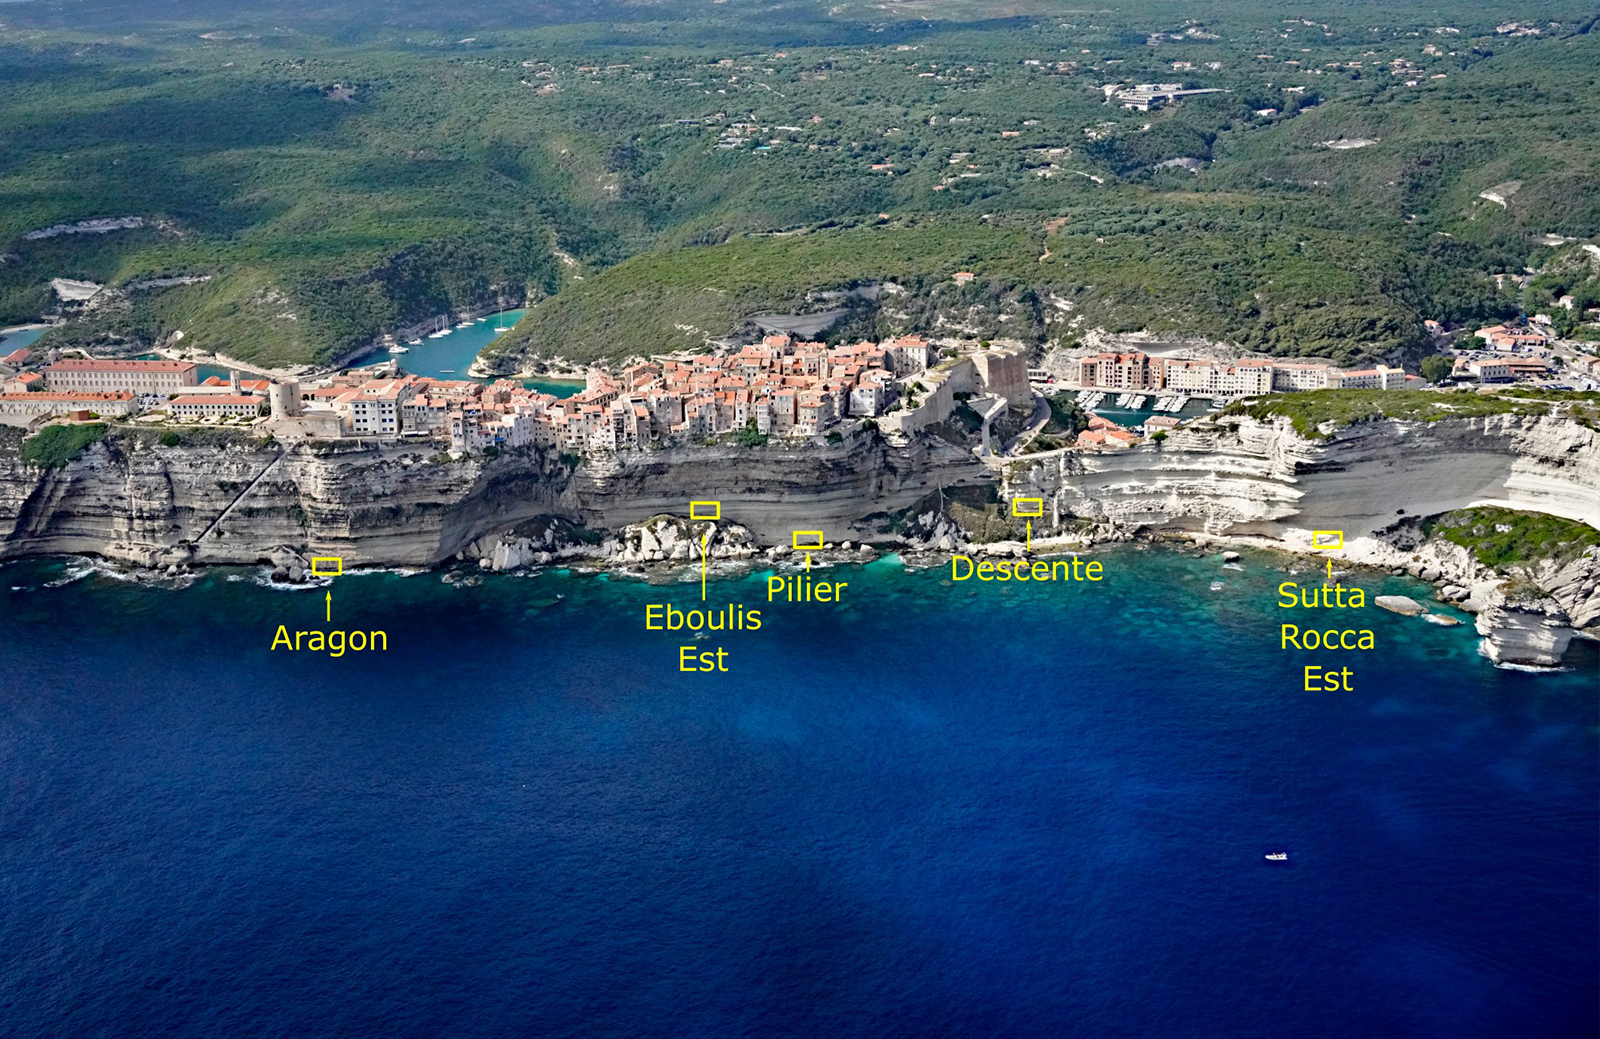 Erosion monitoring sites at the foot of the Bonifacio cliffs (Corsica). © BRGM - T. Dewez